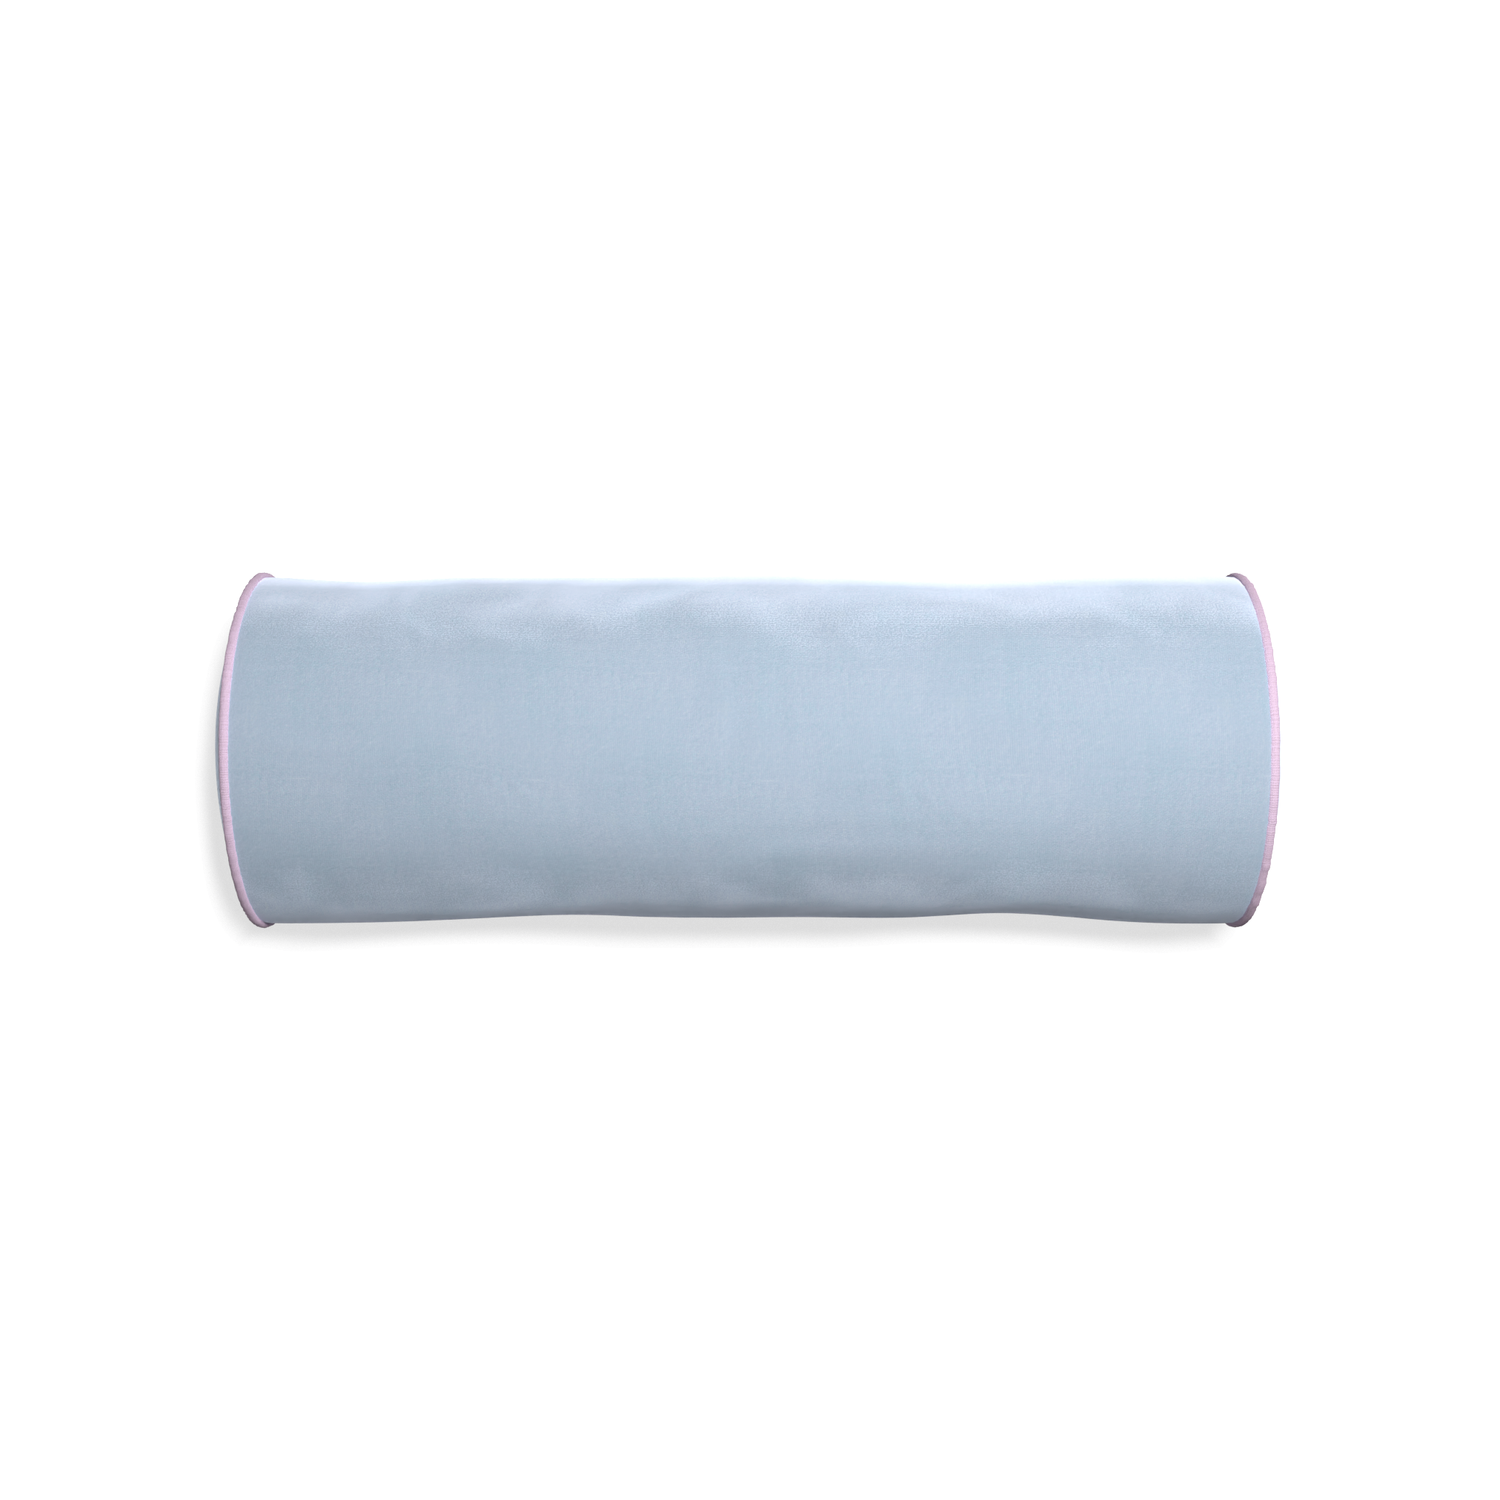 Bolster sky velvet custom pillow with l piping on white background